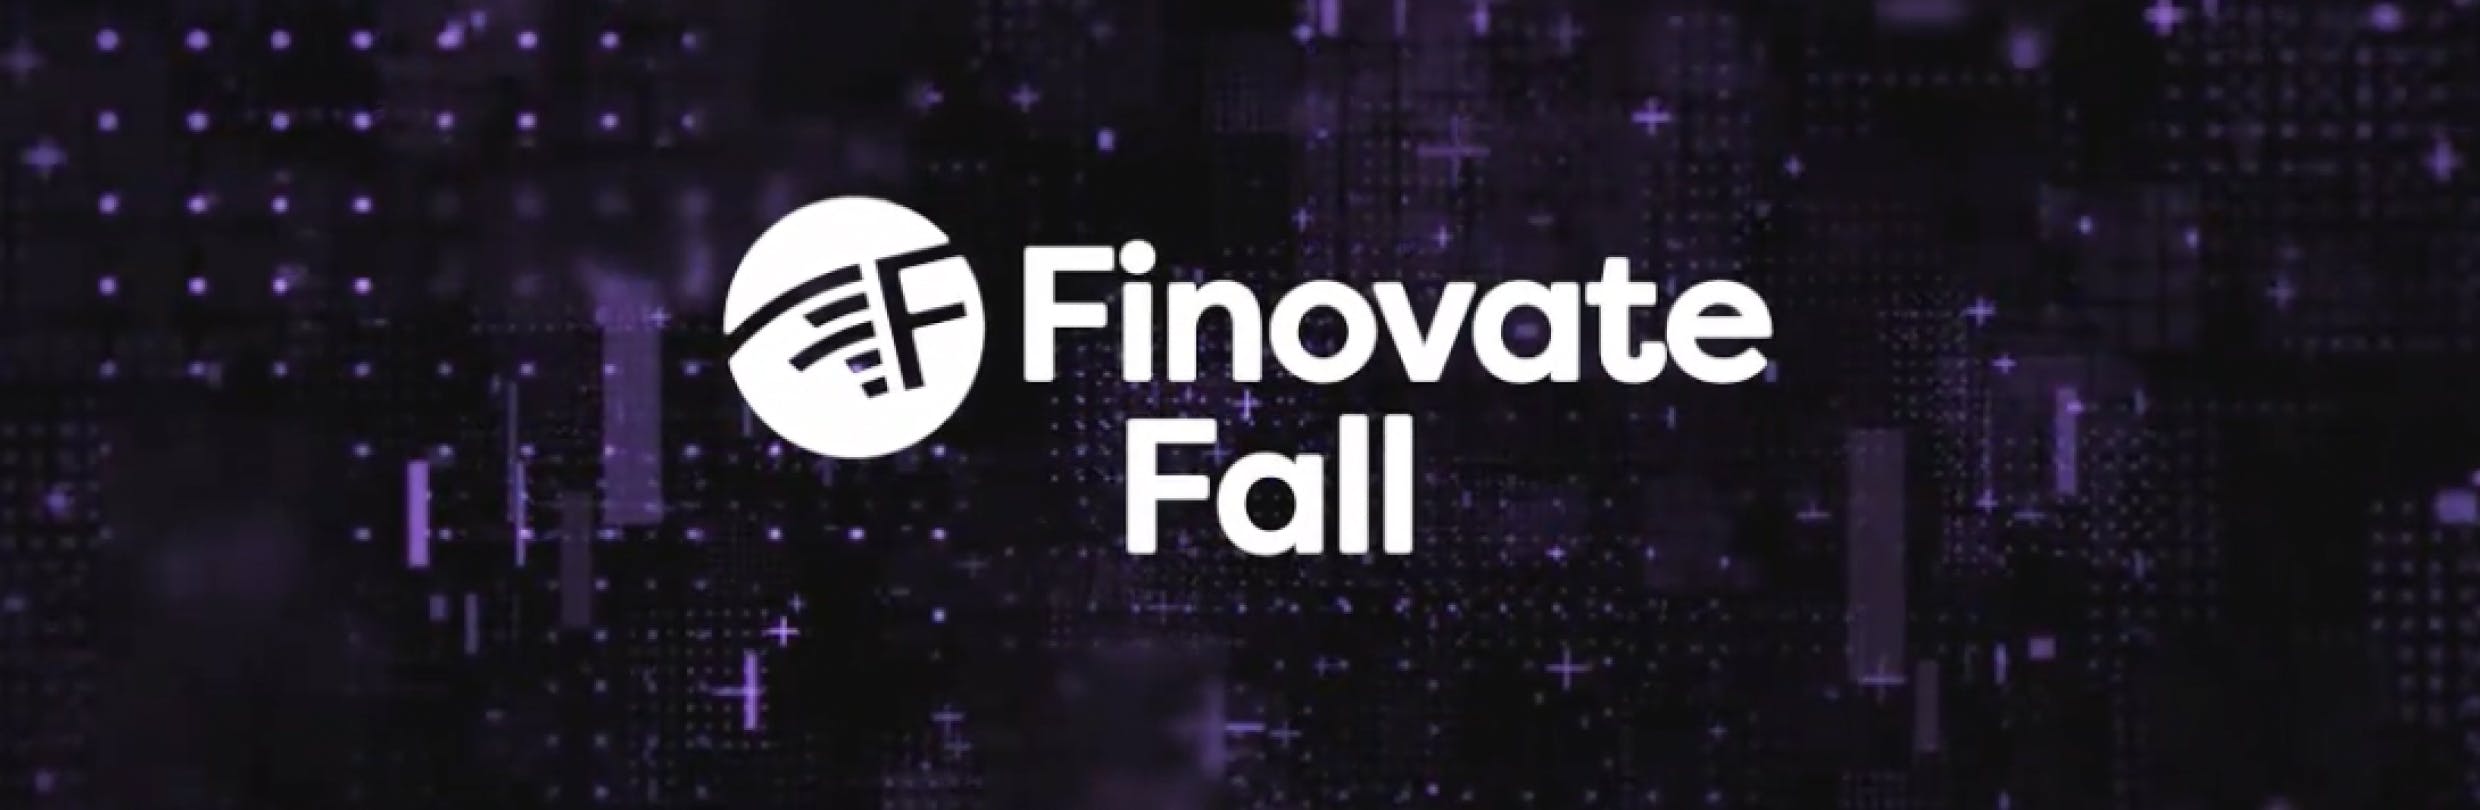 Finovate Fall logo banner